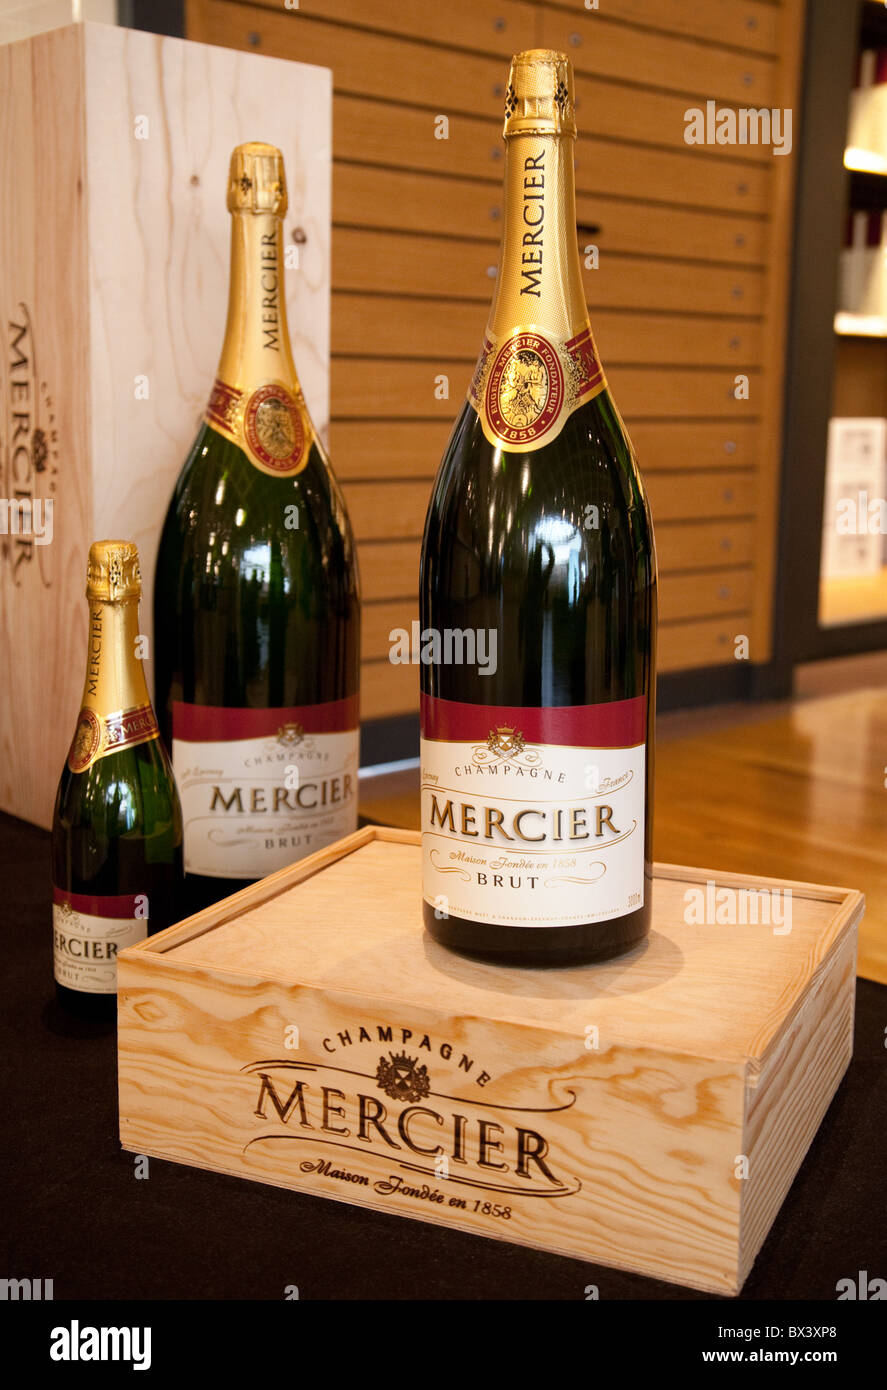 Flaschen Champagner Mercier auf dem Display, Mercier Champagnerhaus, Avenue  de Champagne Epernay, Frankreich Stockfotografie - Alamy